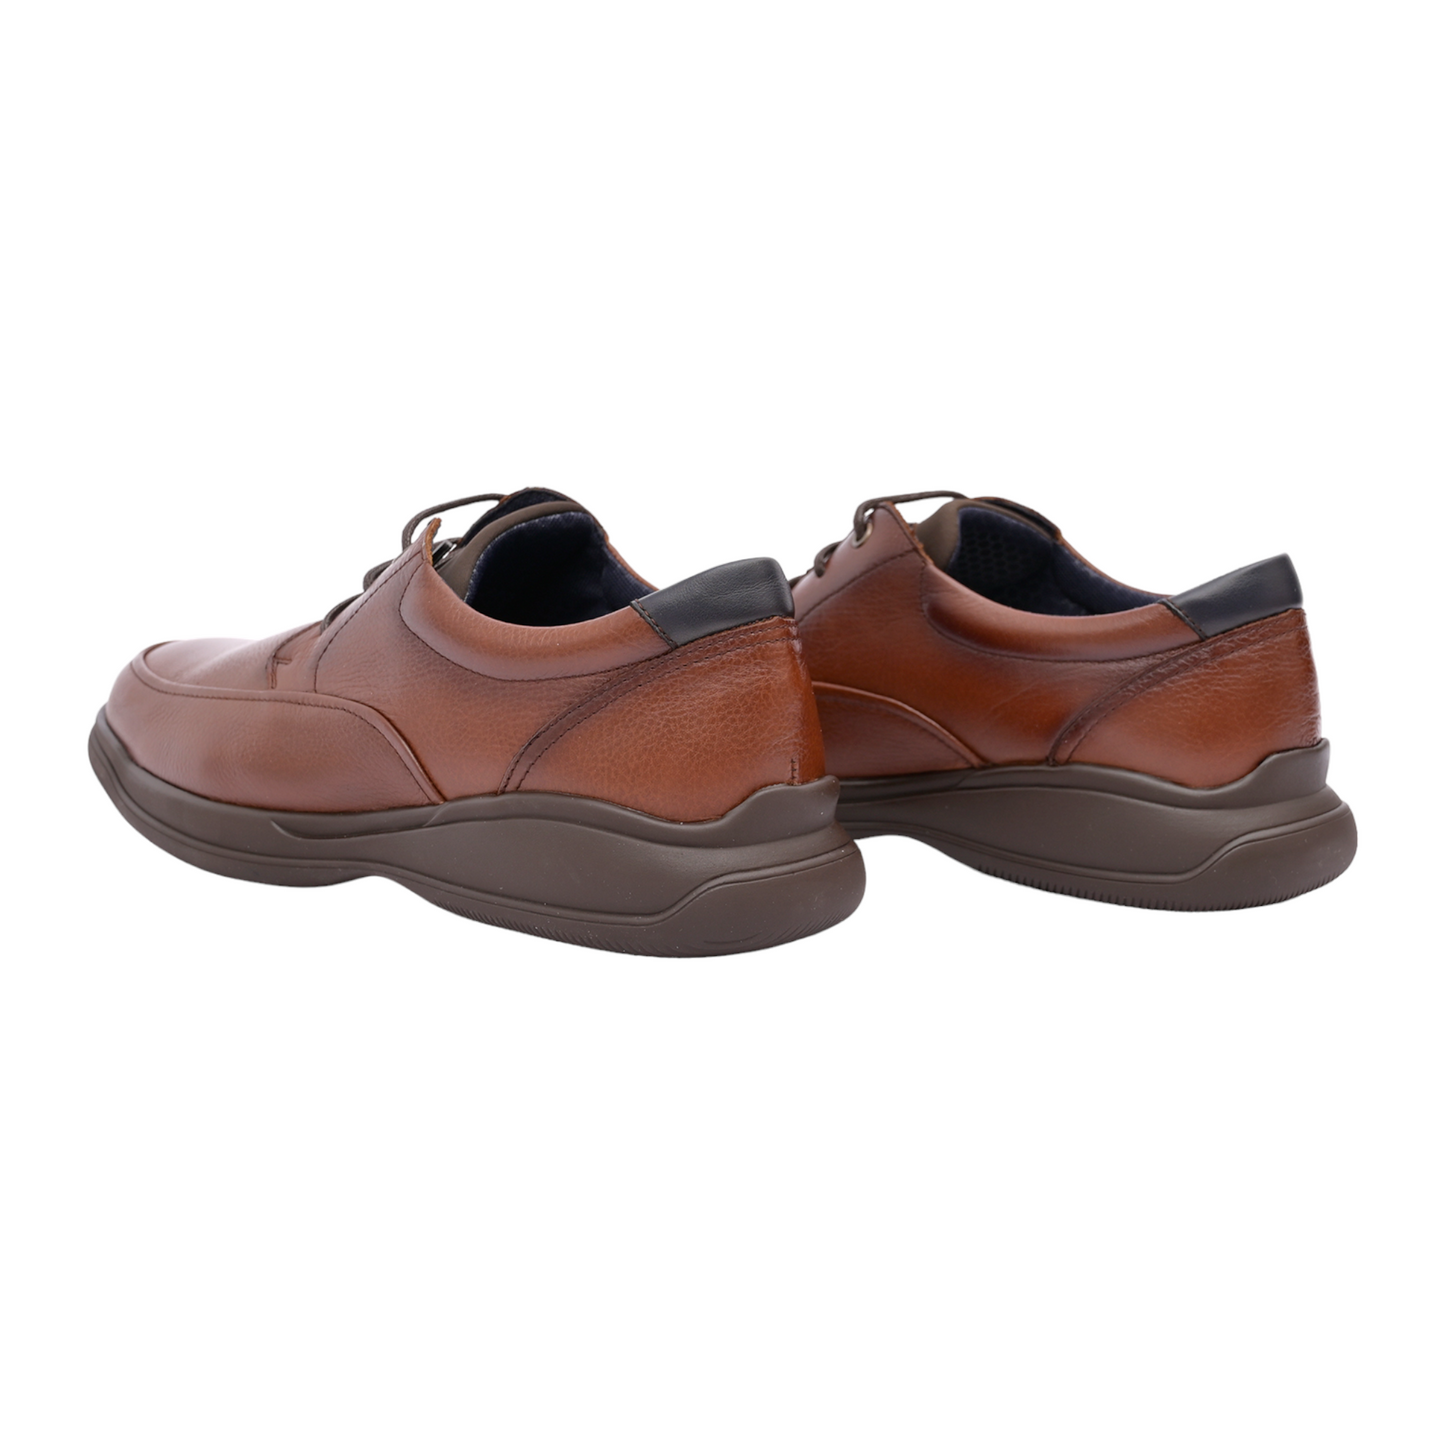 Zapato Clasico Color Marron 3010